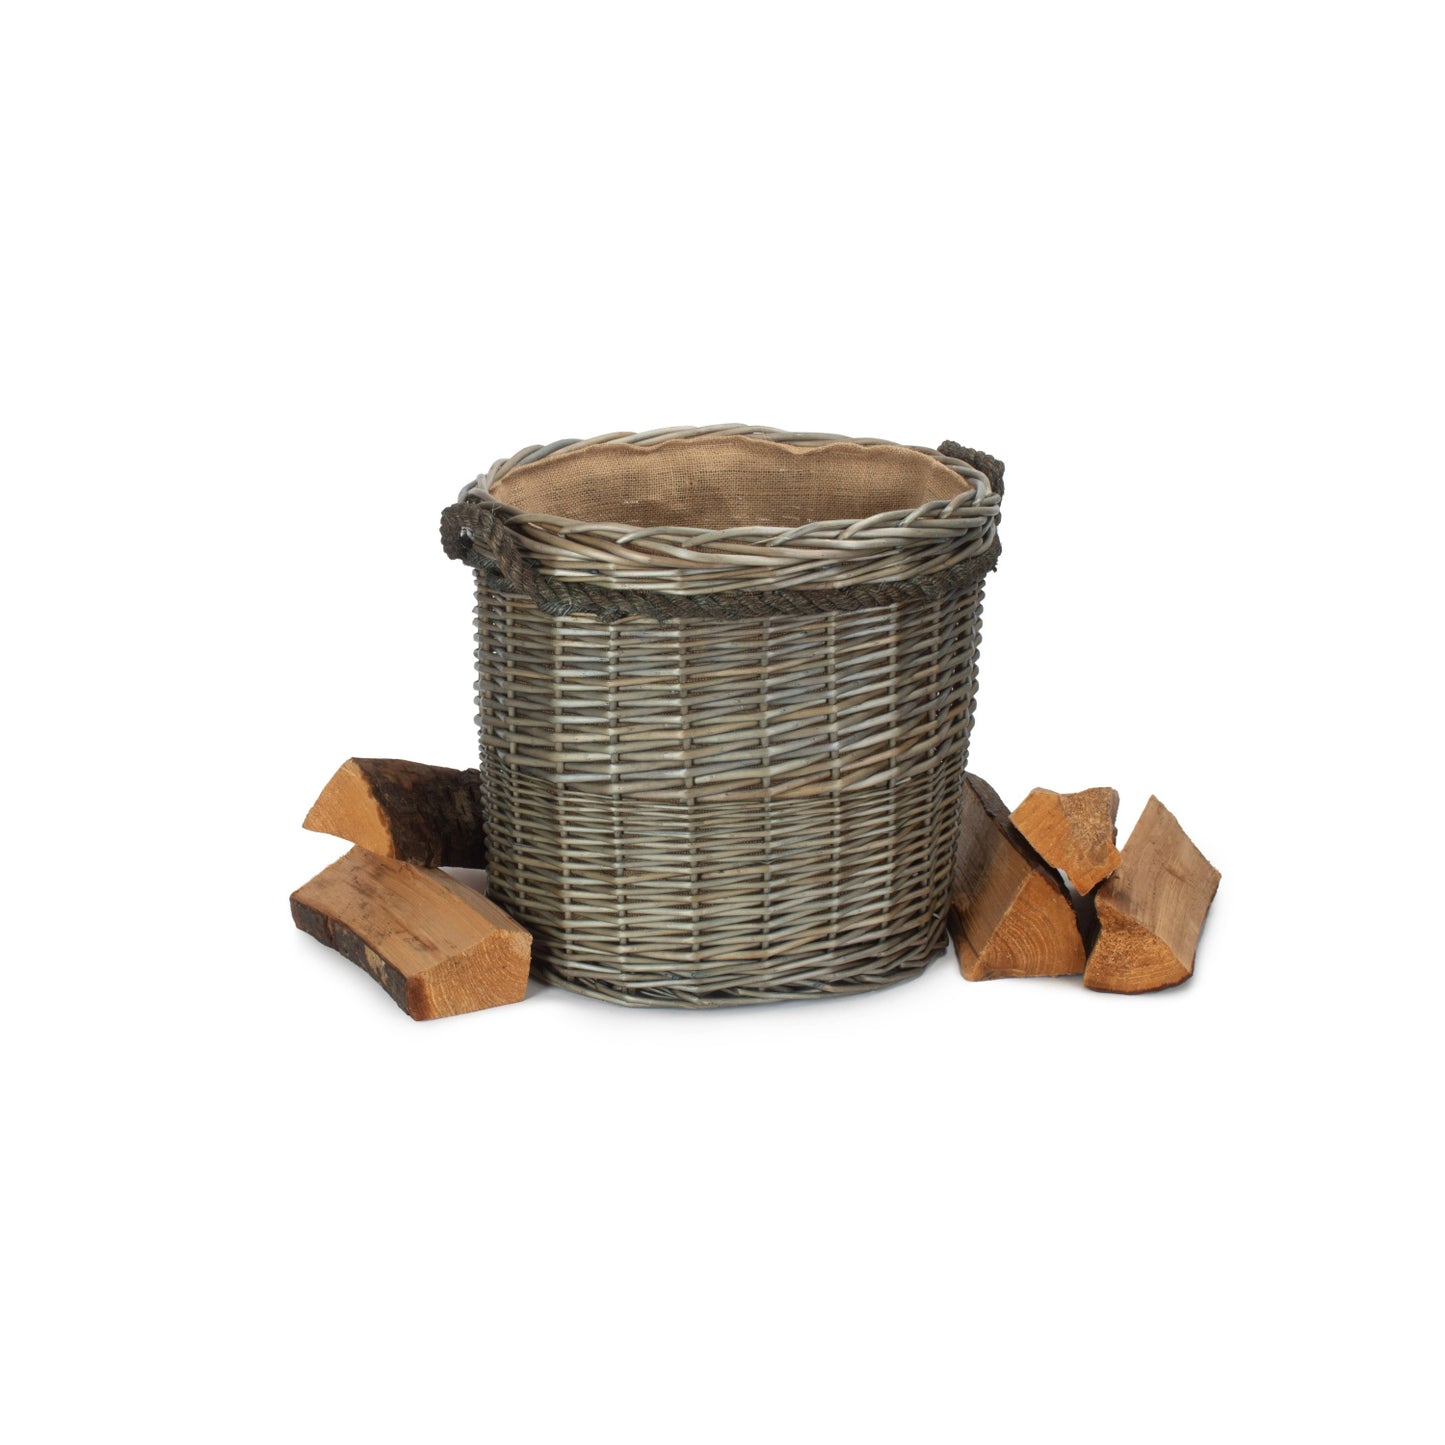 Size 1 Antique Wash Round Storage Basket